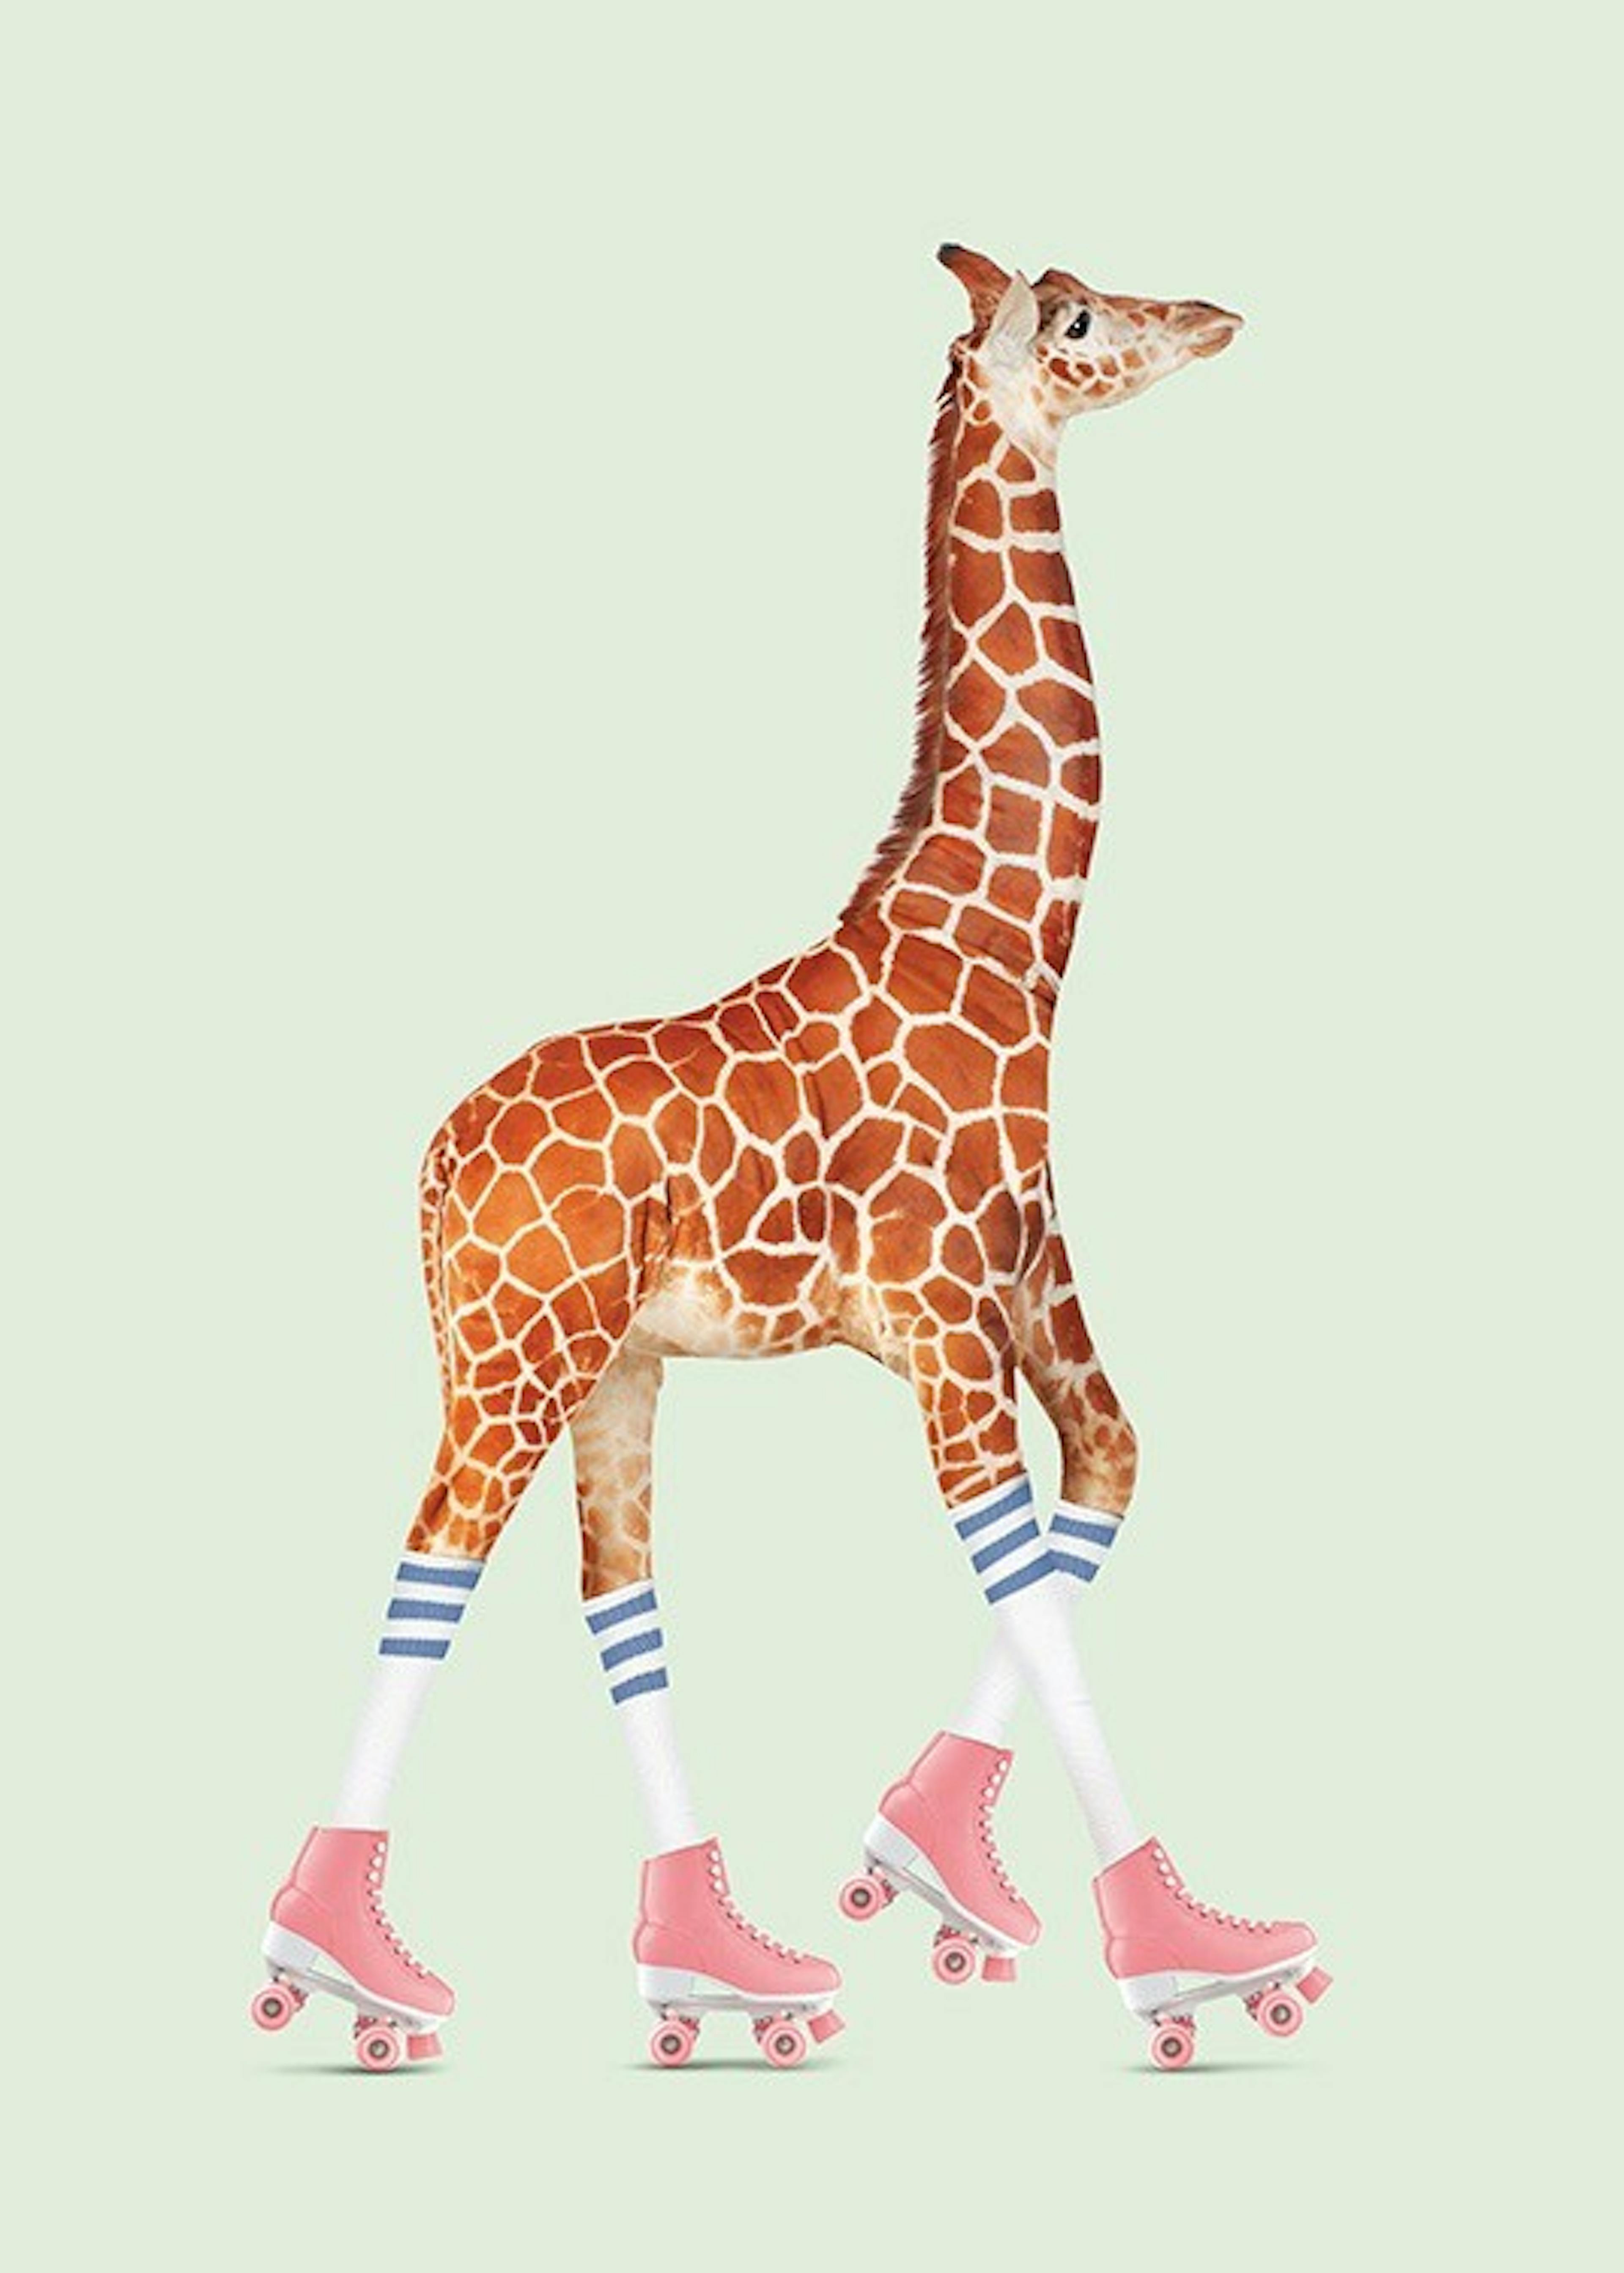 Jonas Loose - Rollerskating Giraffe 포스터 0